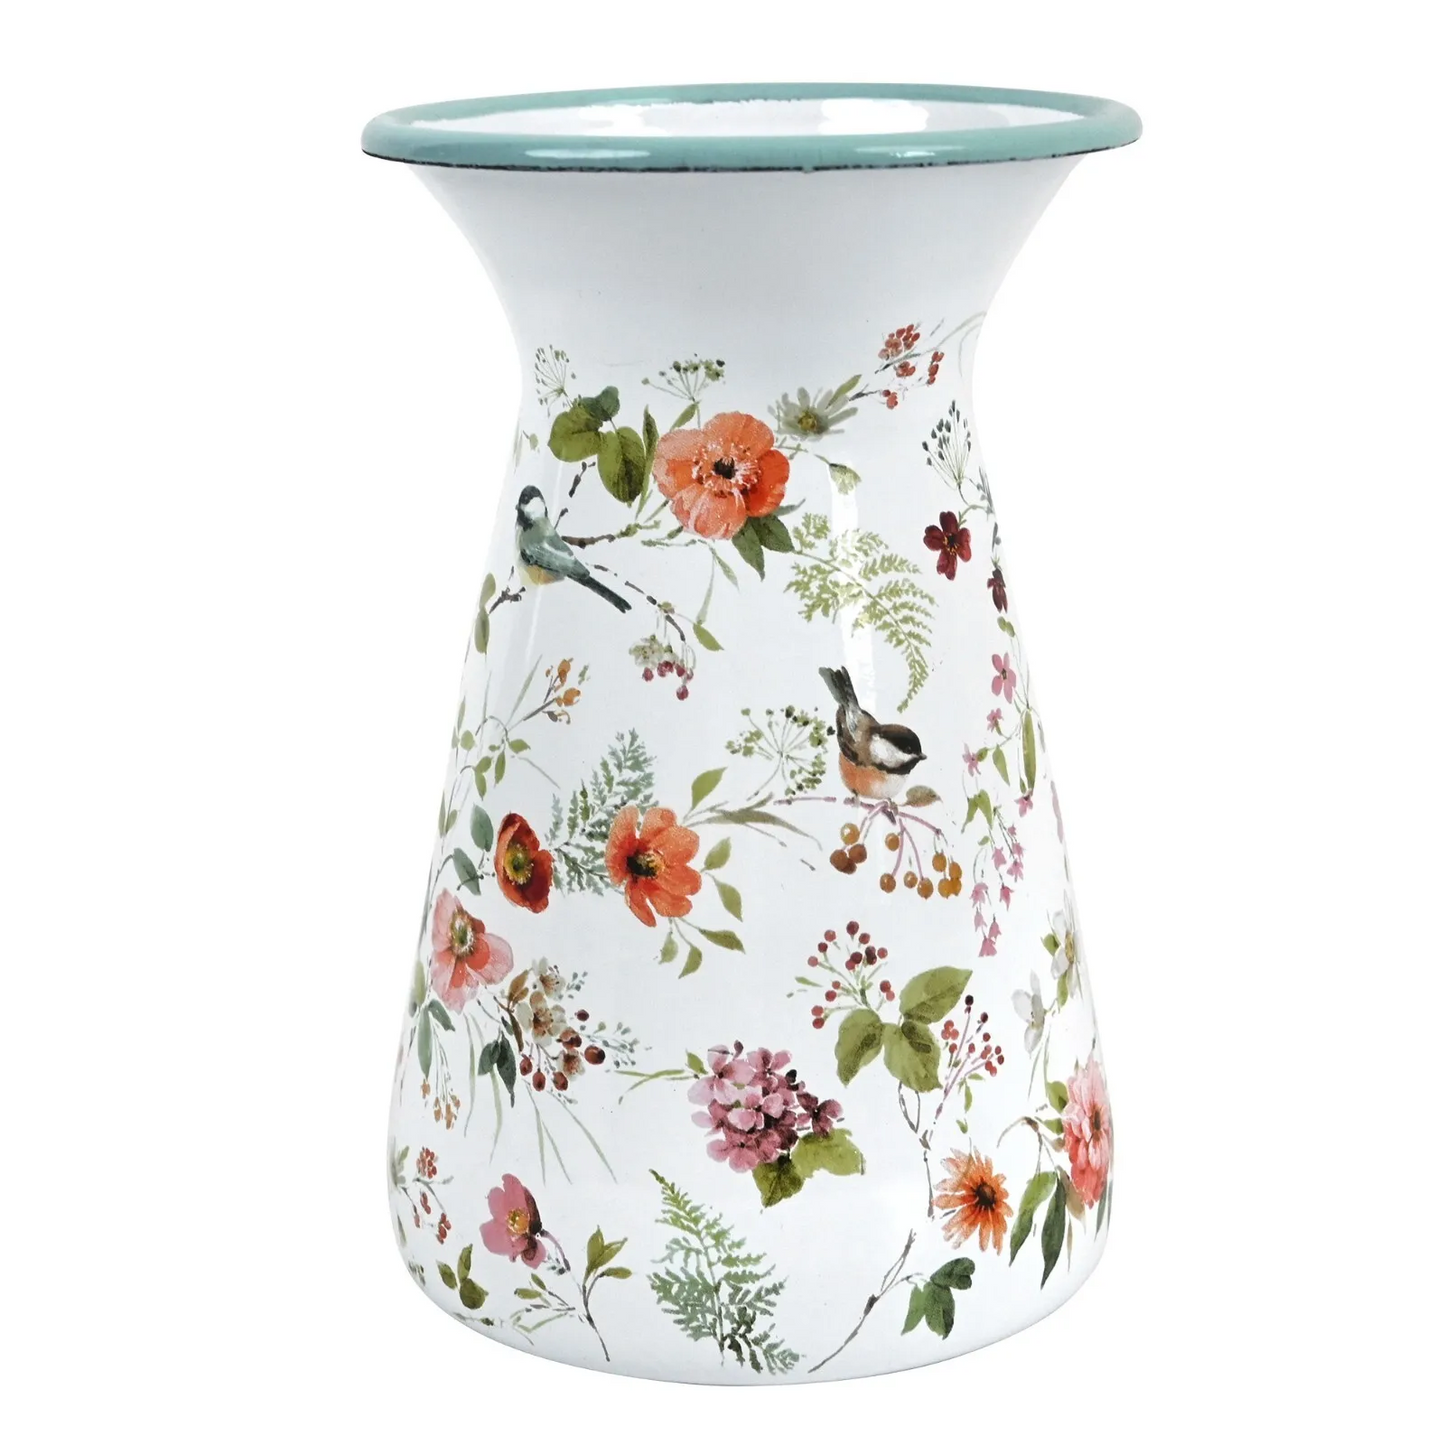 Farmhouse Flower Vase - Decorative Metal Pitcher Milk Jug For Floral Arrangements